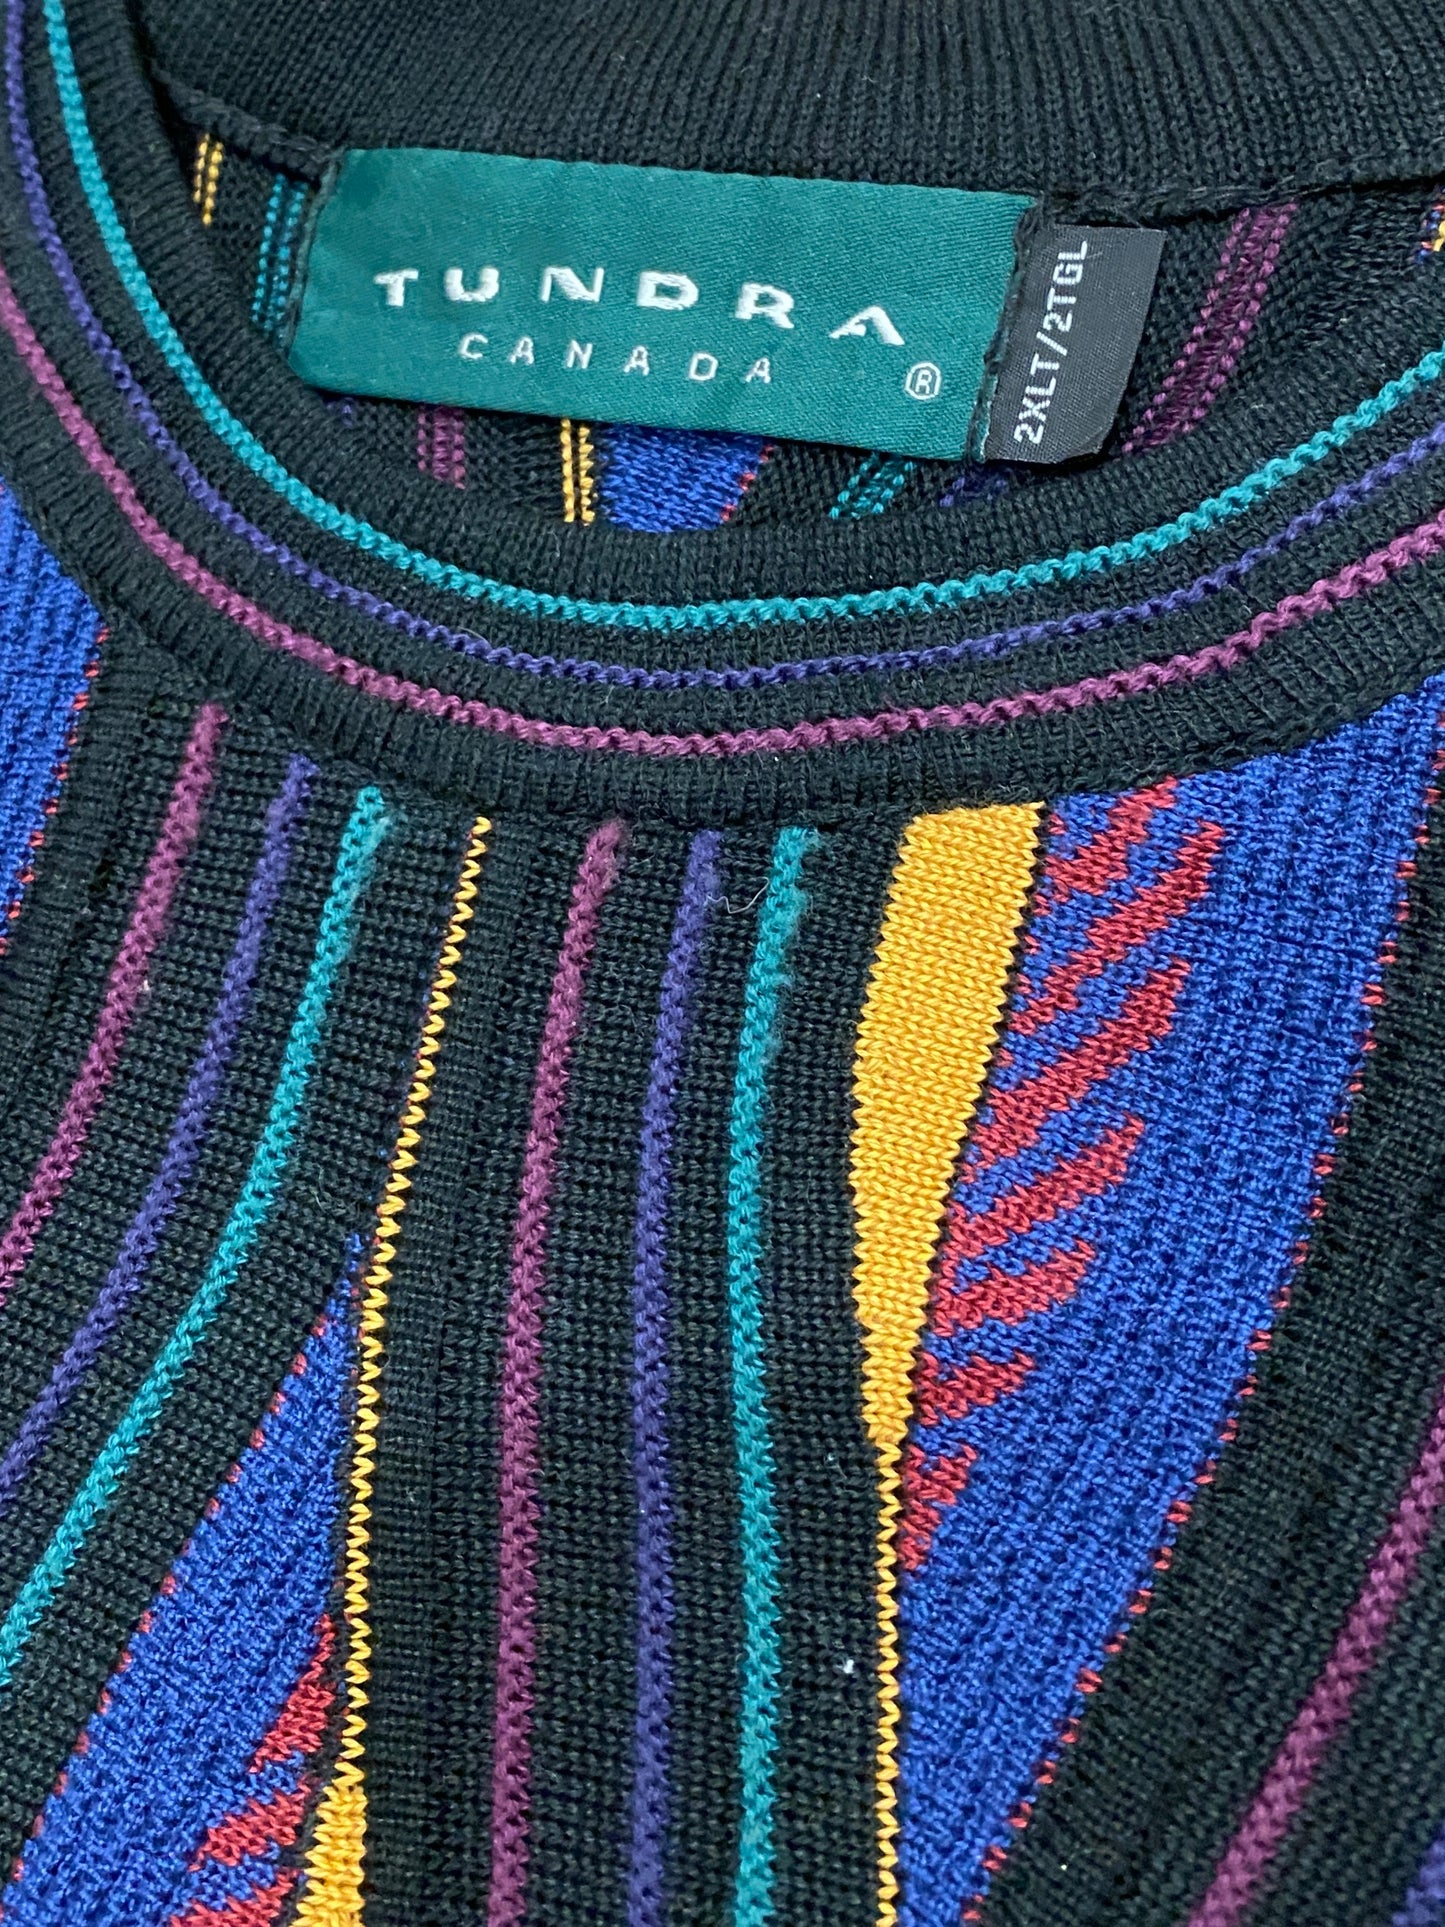 Vintage Tundra knit sweater (XL-XXL)